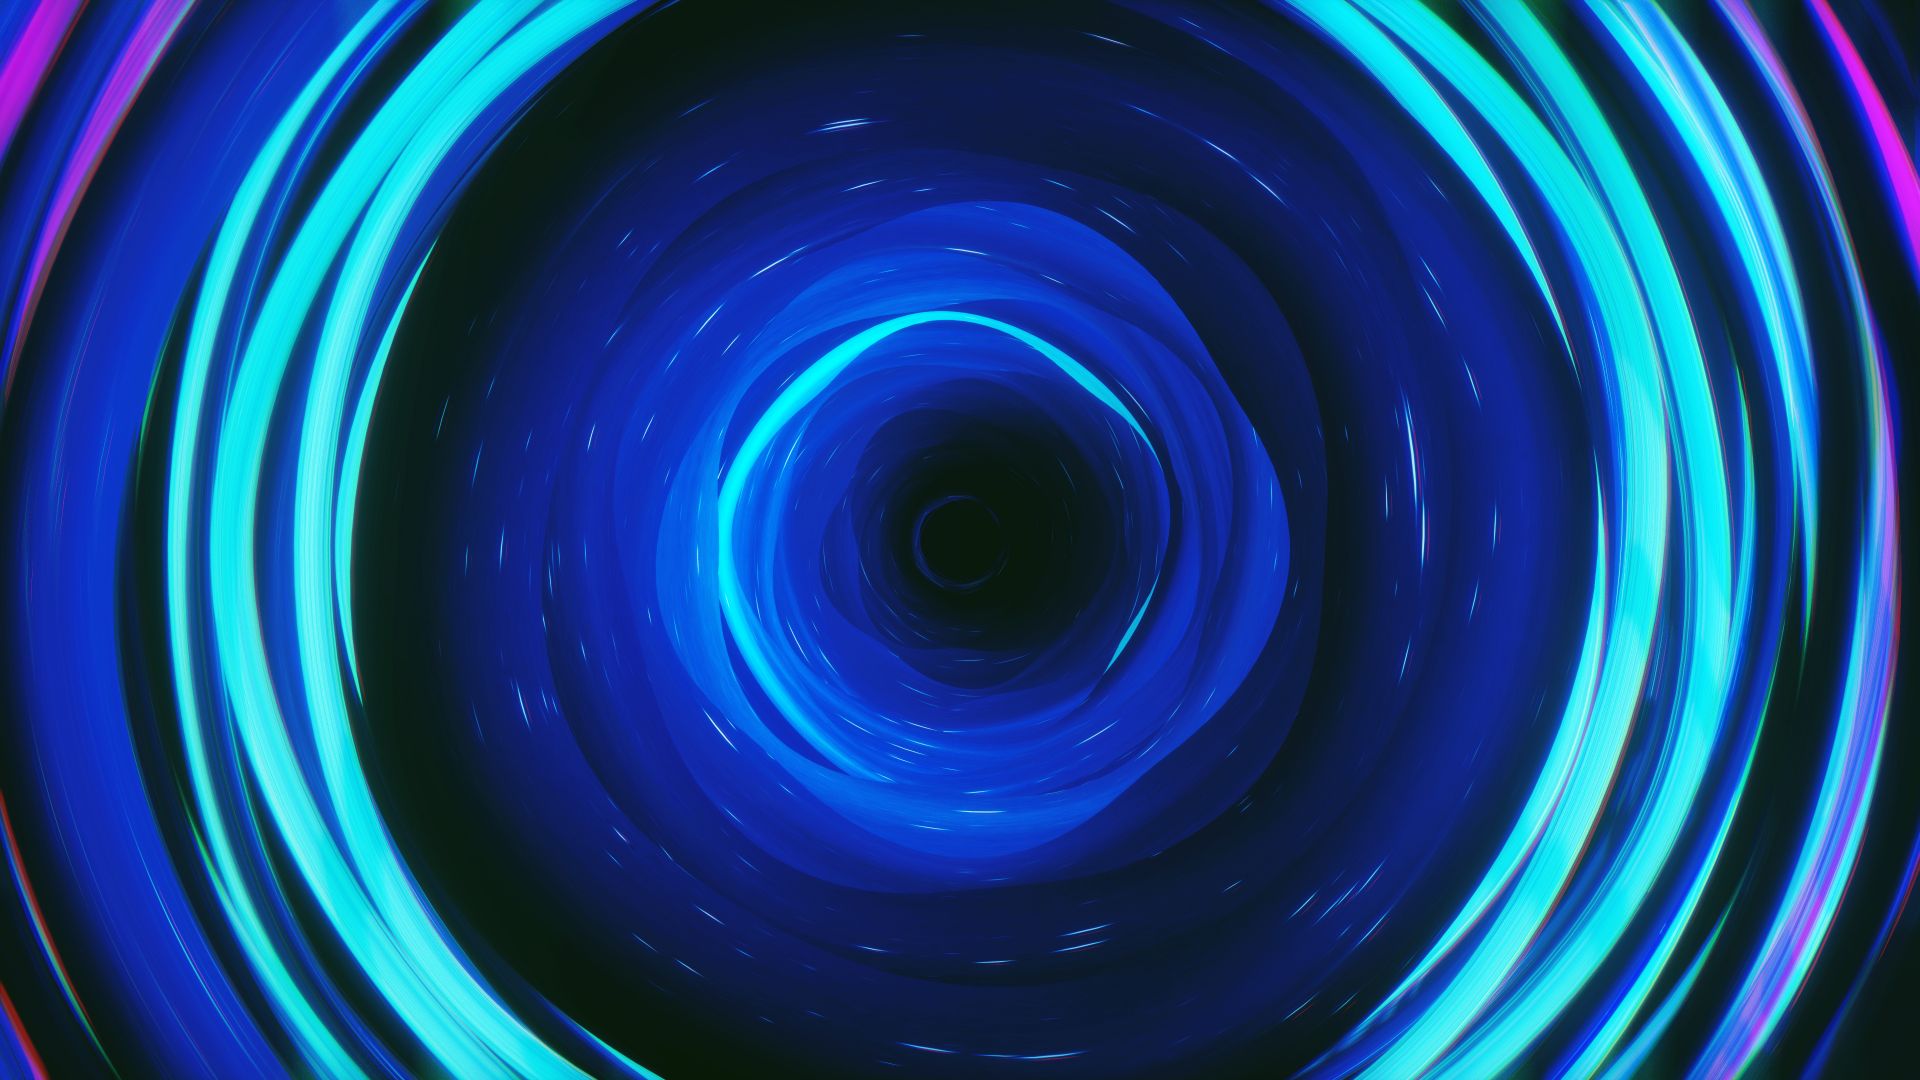 fond d'écran cercle,bleu,bleu cobalt,bleu électrique,lumière,cercle